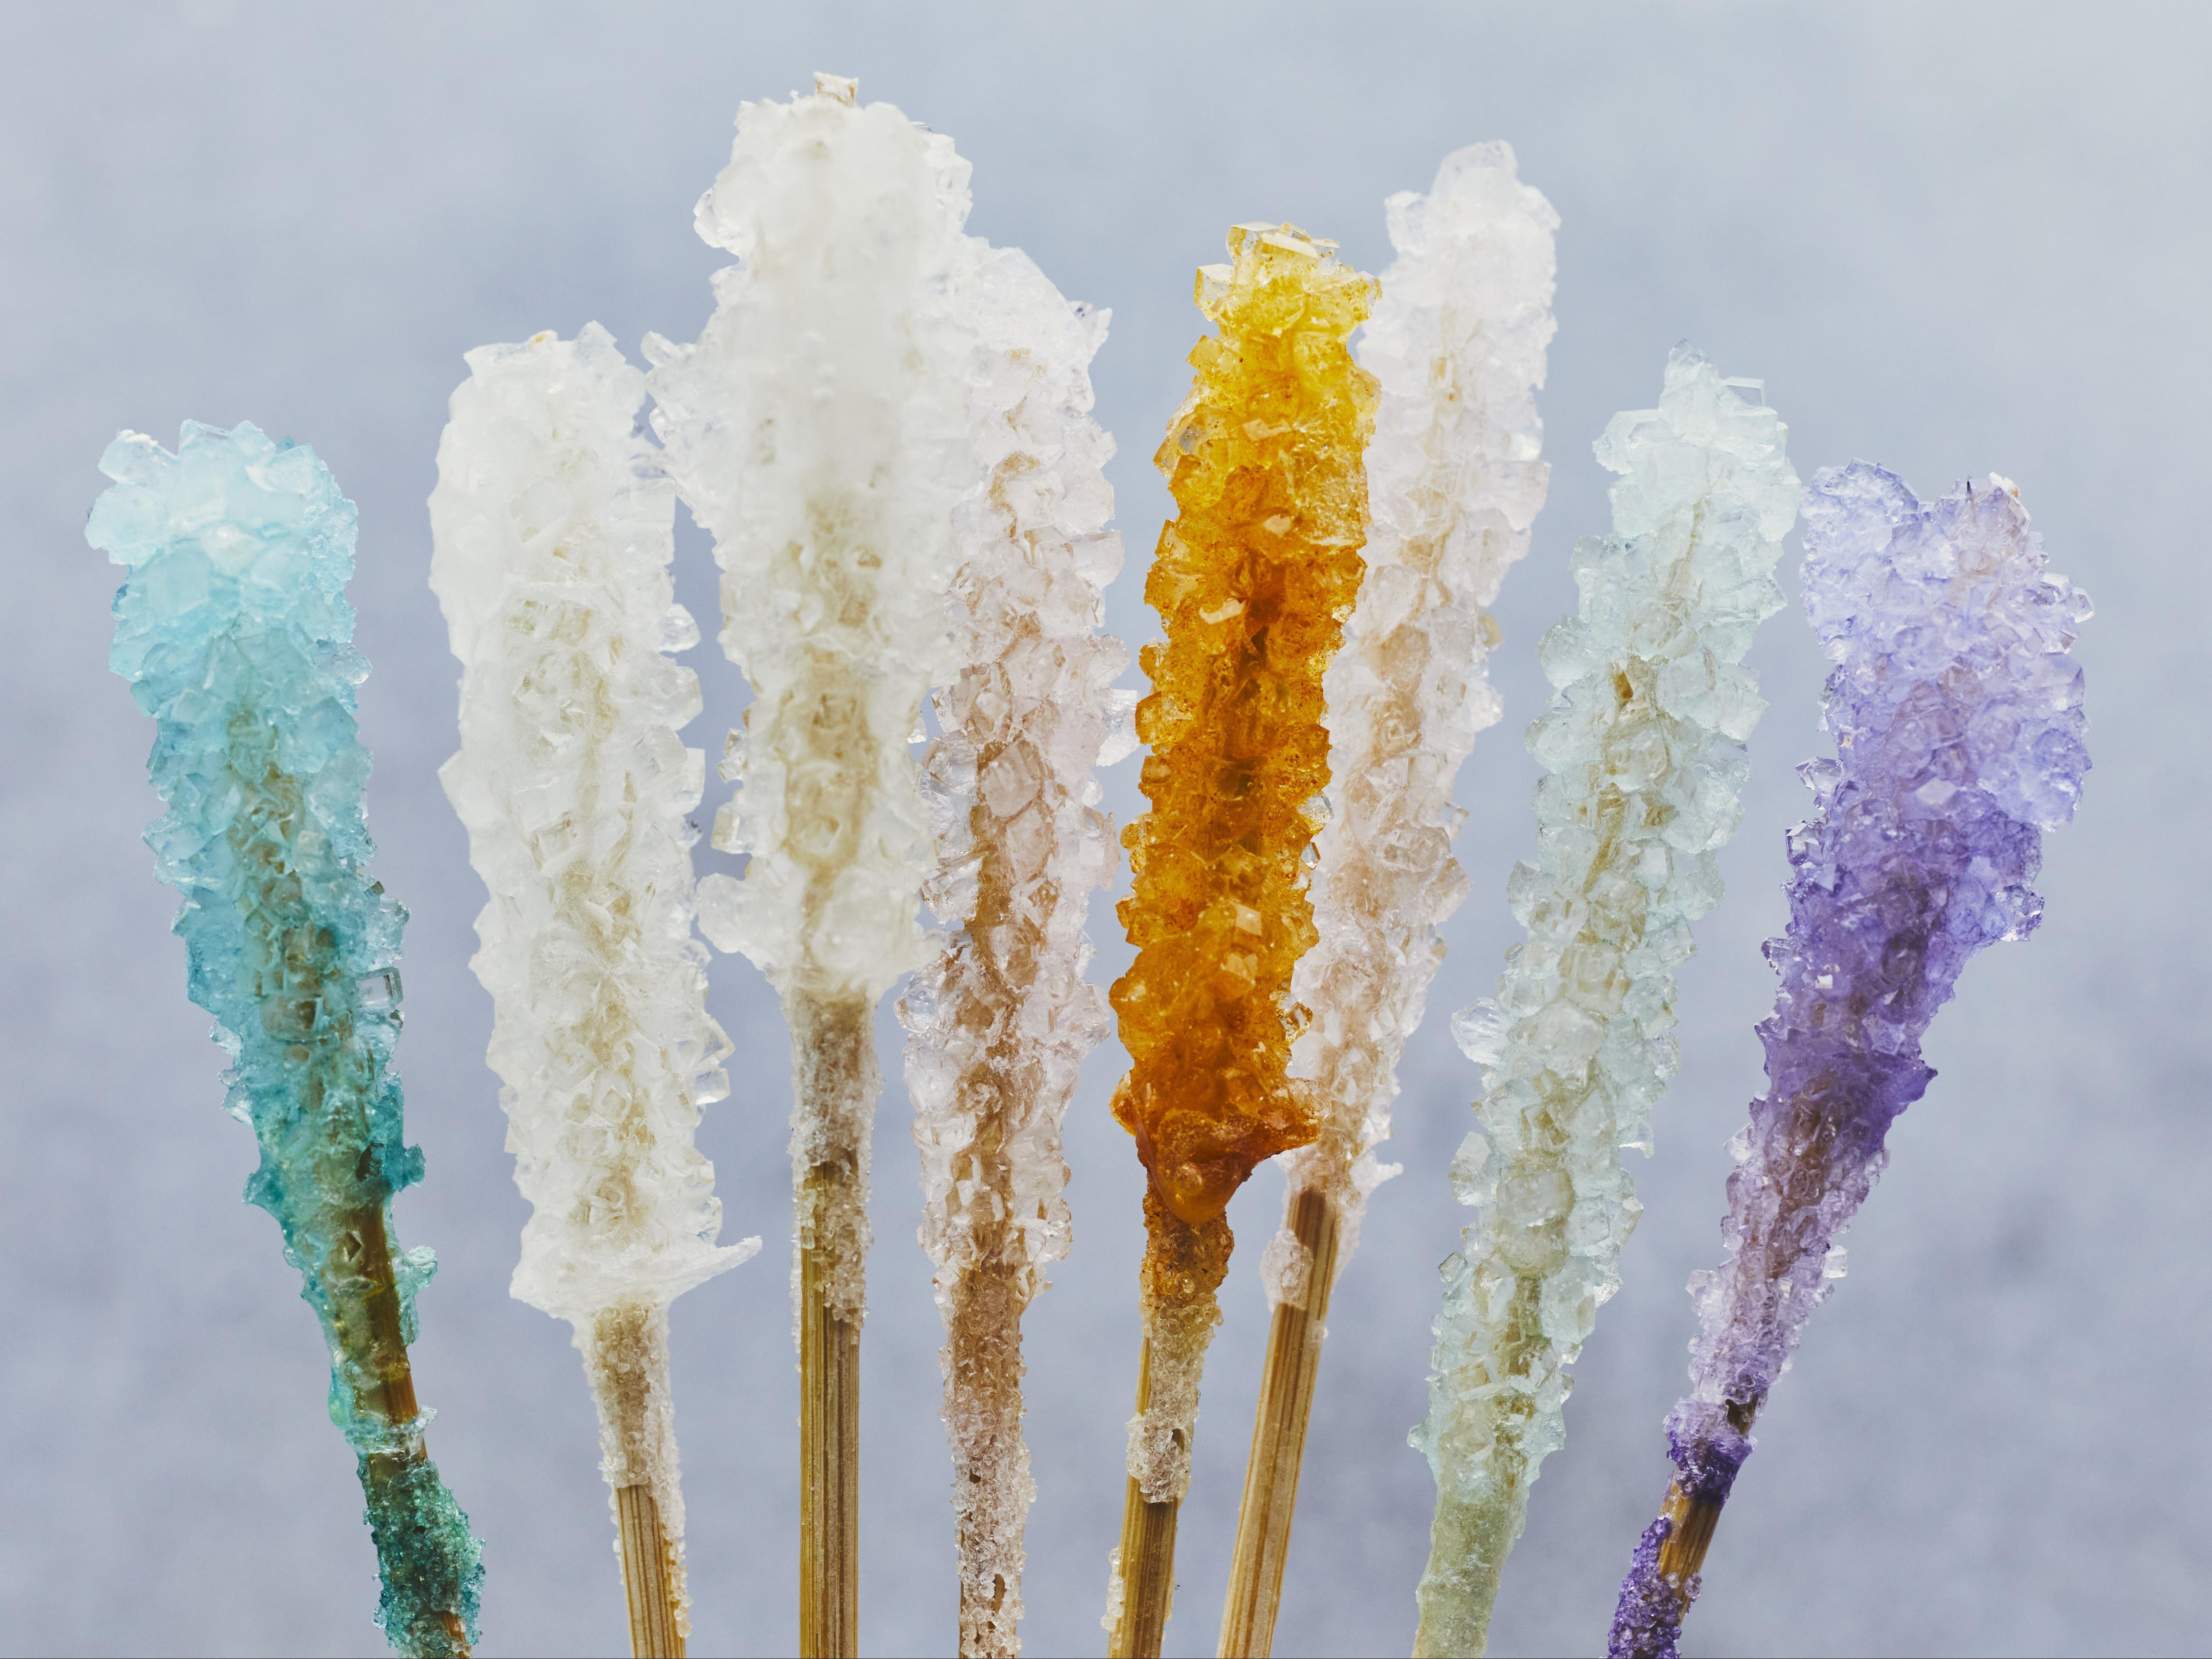 Bâtonnets de sucre cristallisé